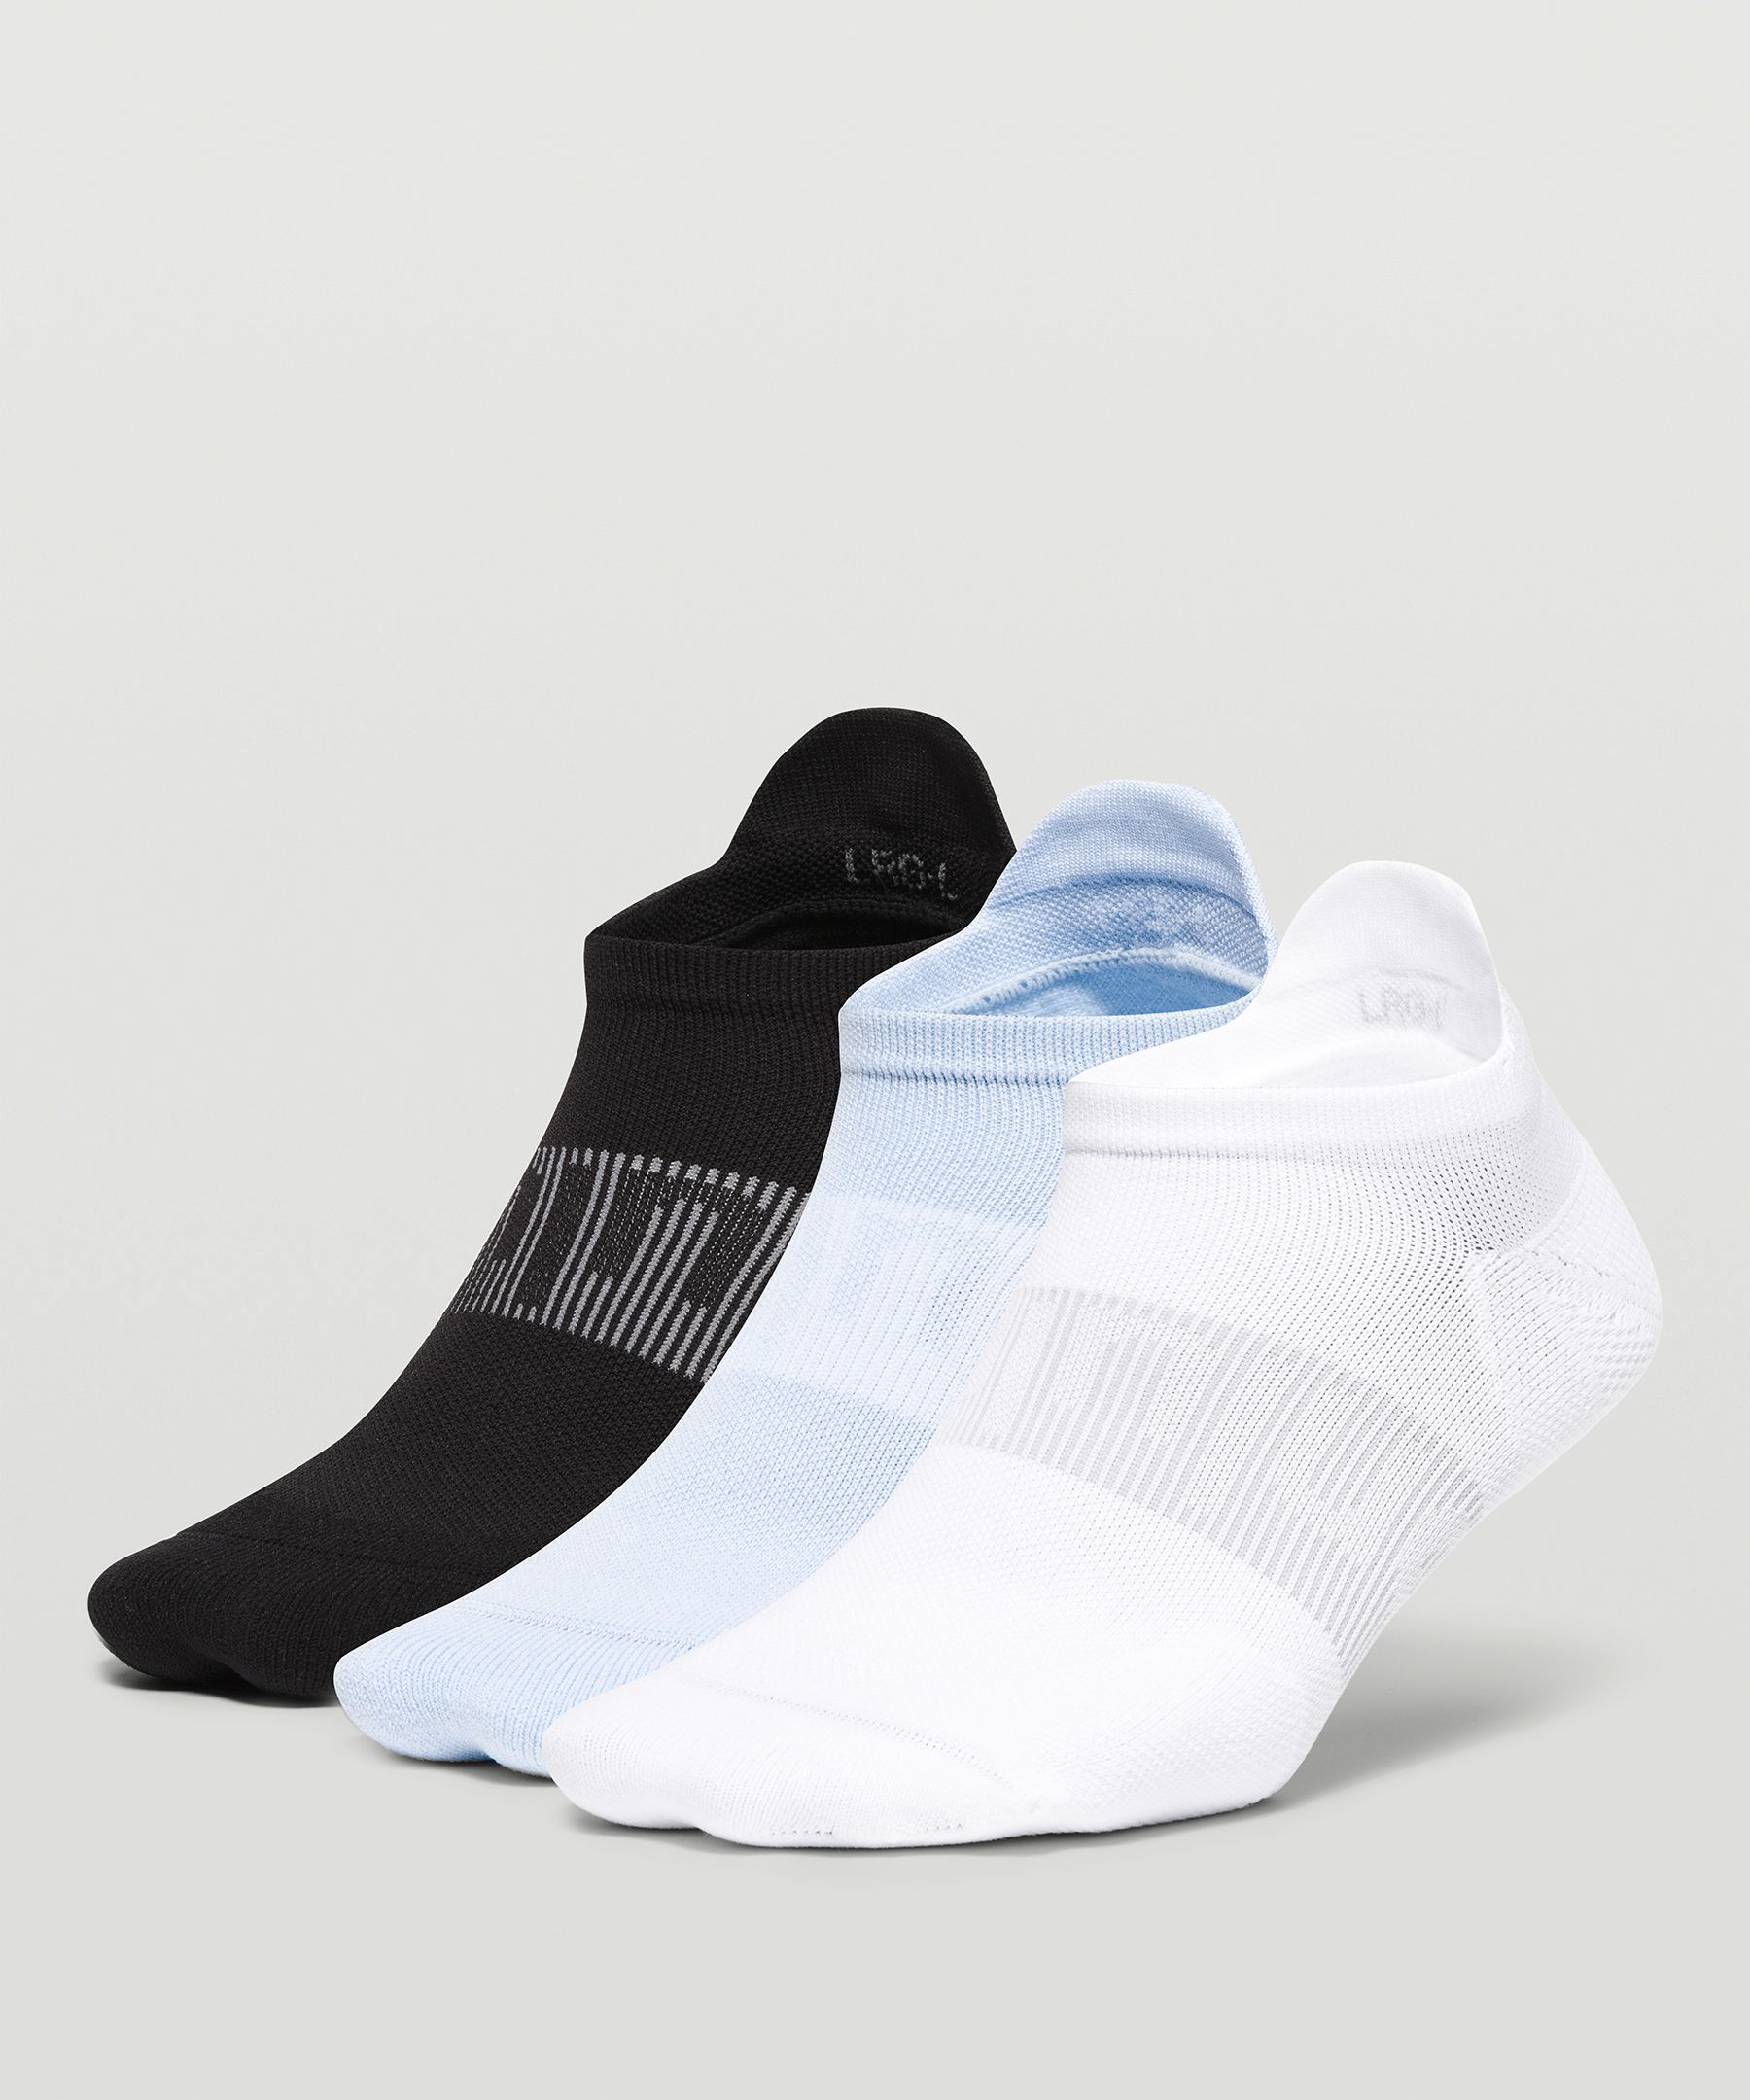 Lululemon Power Stride Tab Socks 3 Pack In White/blue Linen/black